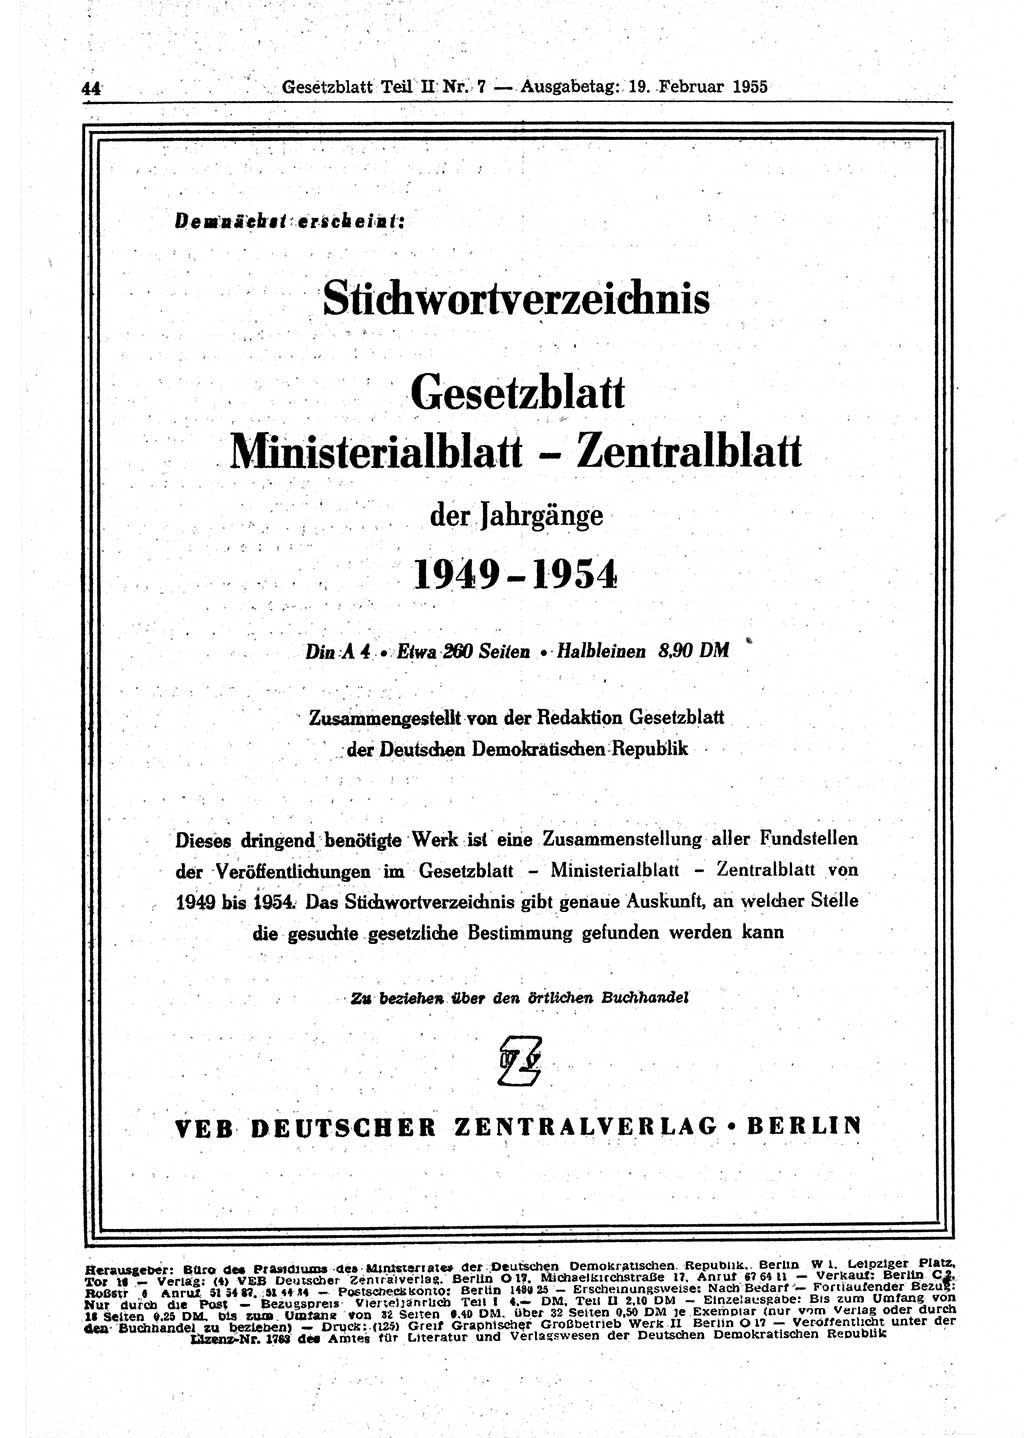 Gesetzblatt (GBl.) der Deutschen Demokratischen Republik (DDR) Teil ⅠⅠ 1955, Seite 44 (GBl. DDR ⅠⅠ 1955, S. 44)